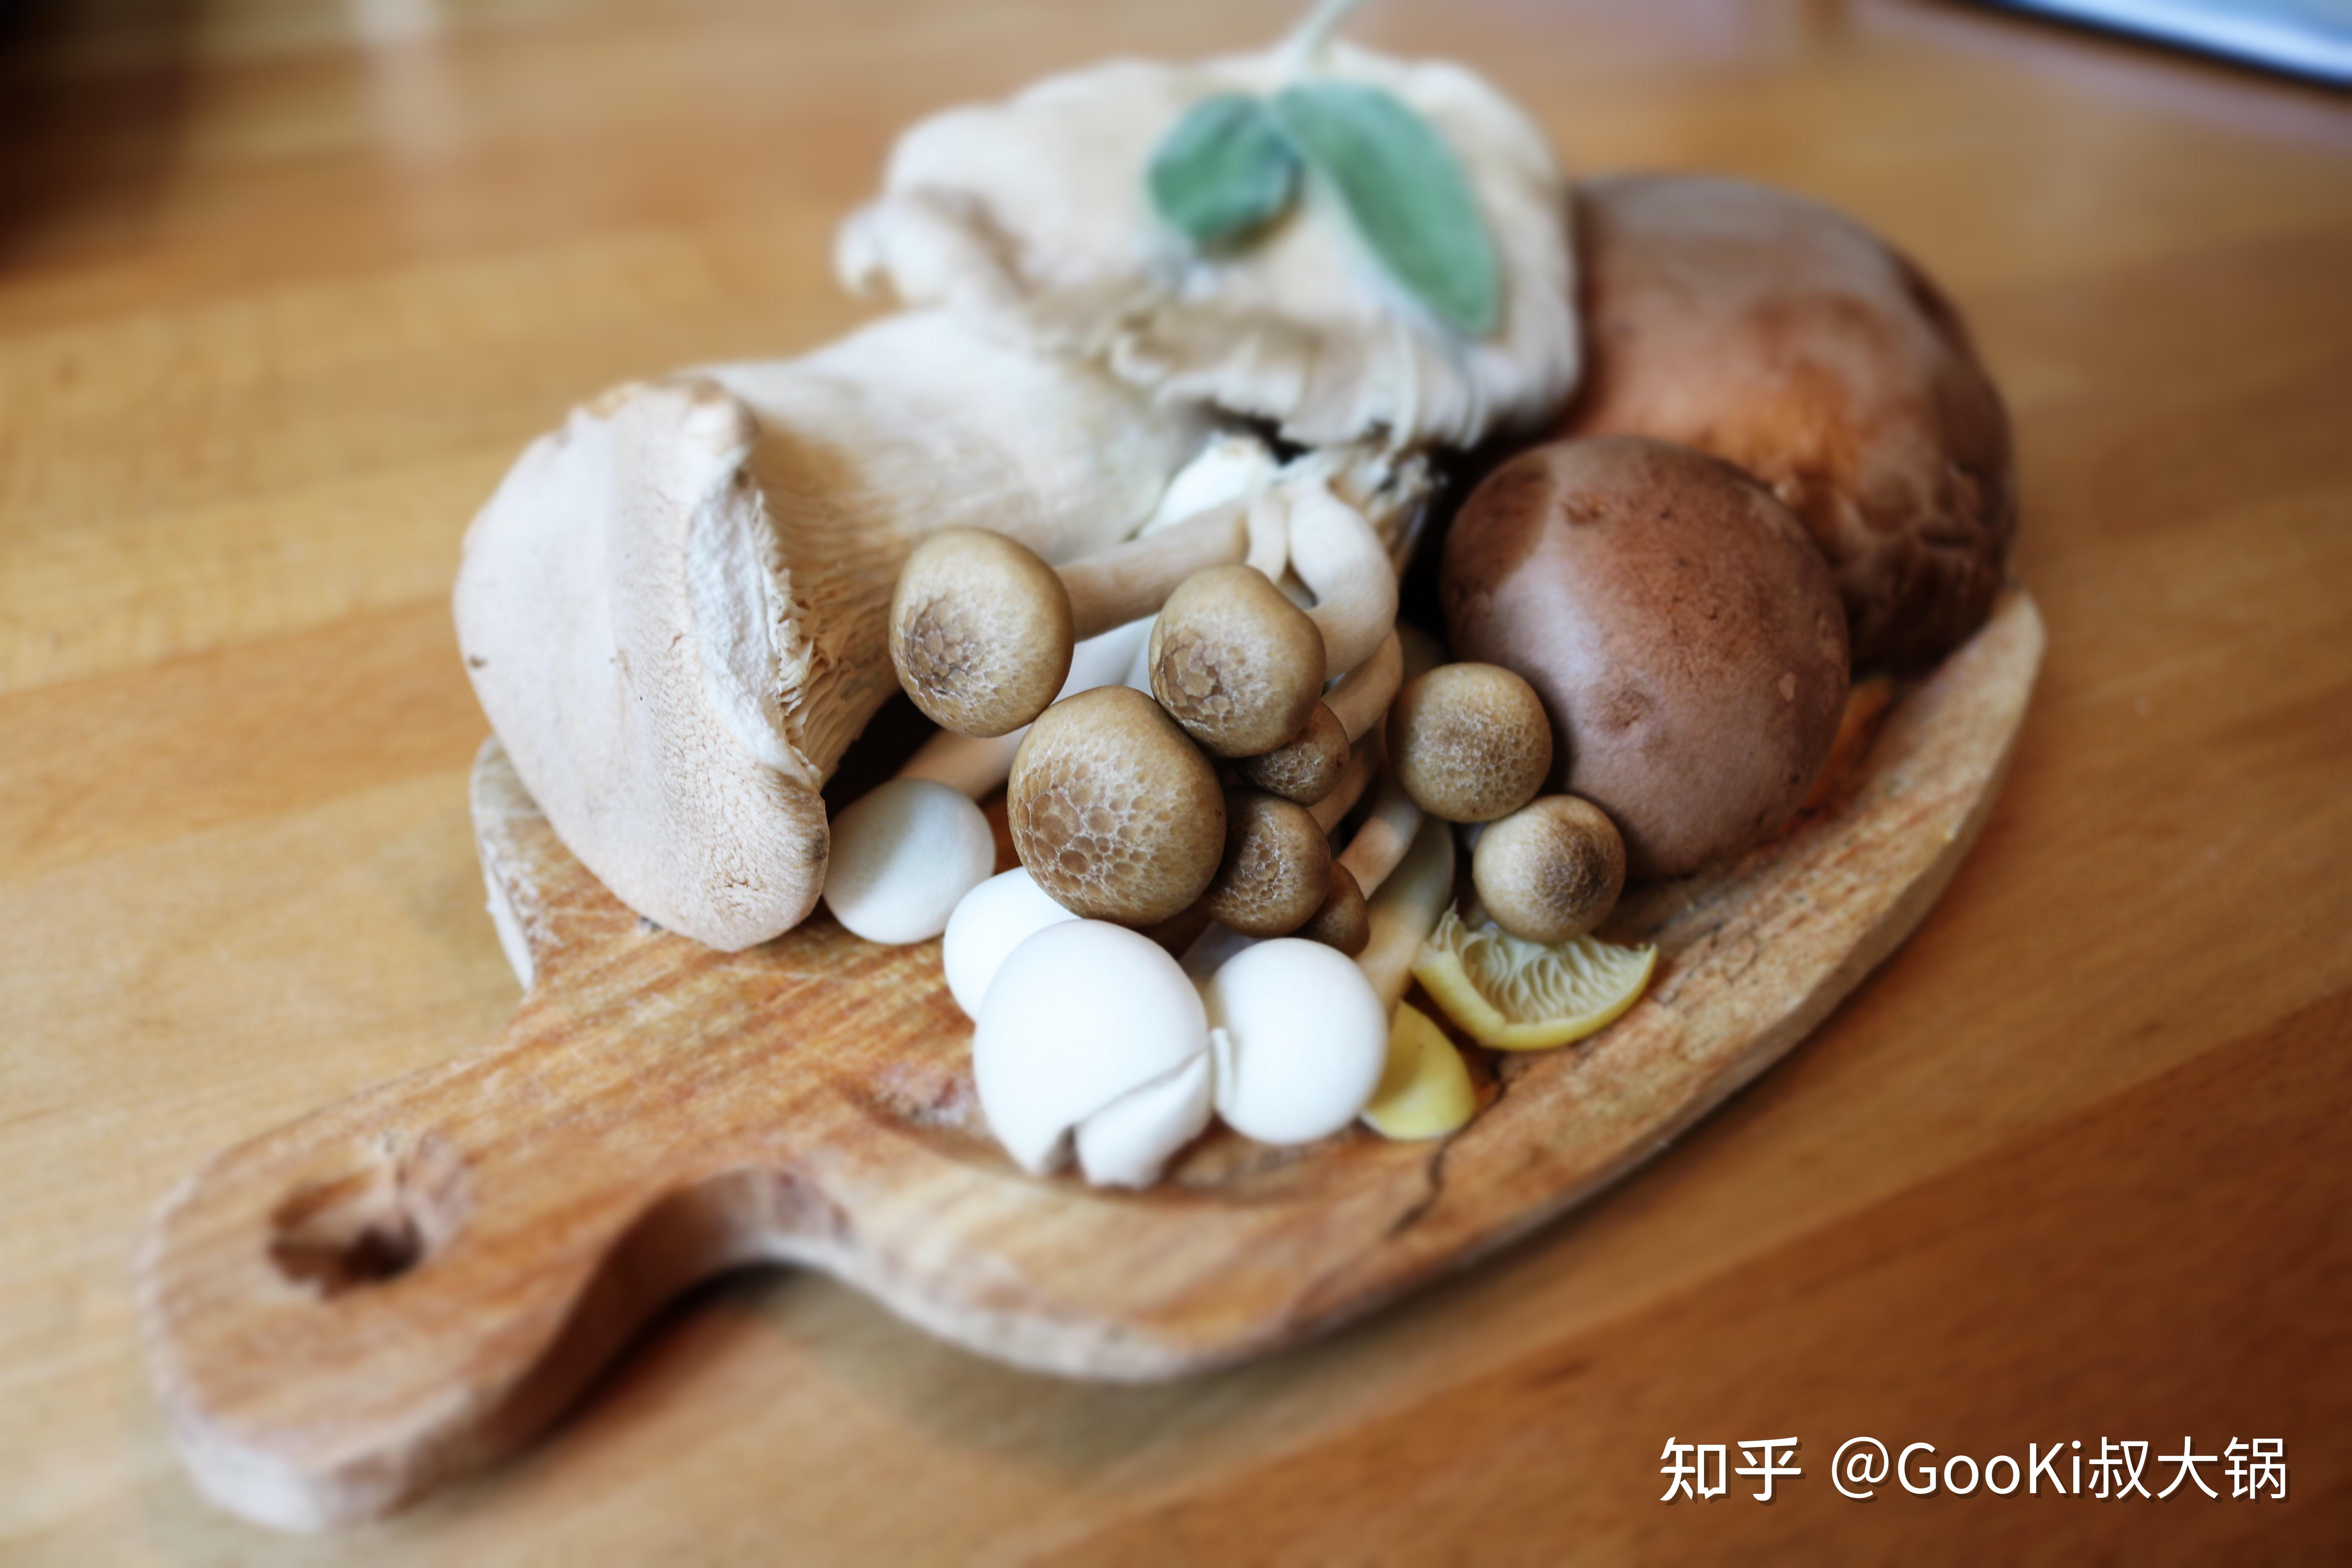 主料:各式蘑菇半斤,马苏里拉芝士辅料:黄油,淡奶油,面粉,盐,白胡椒粉